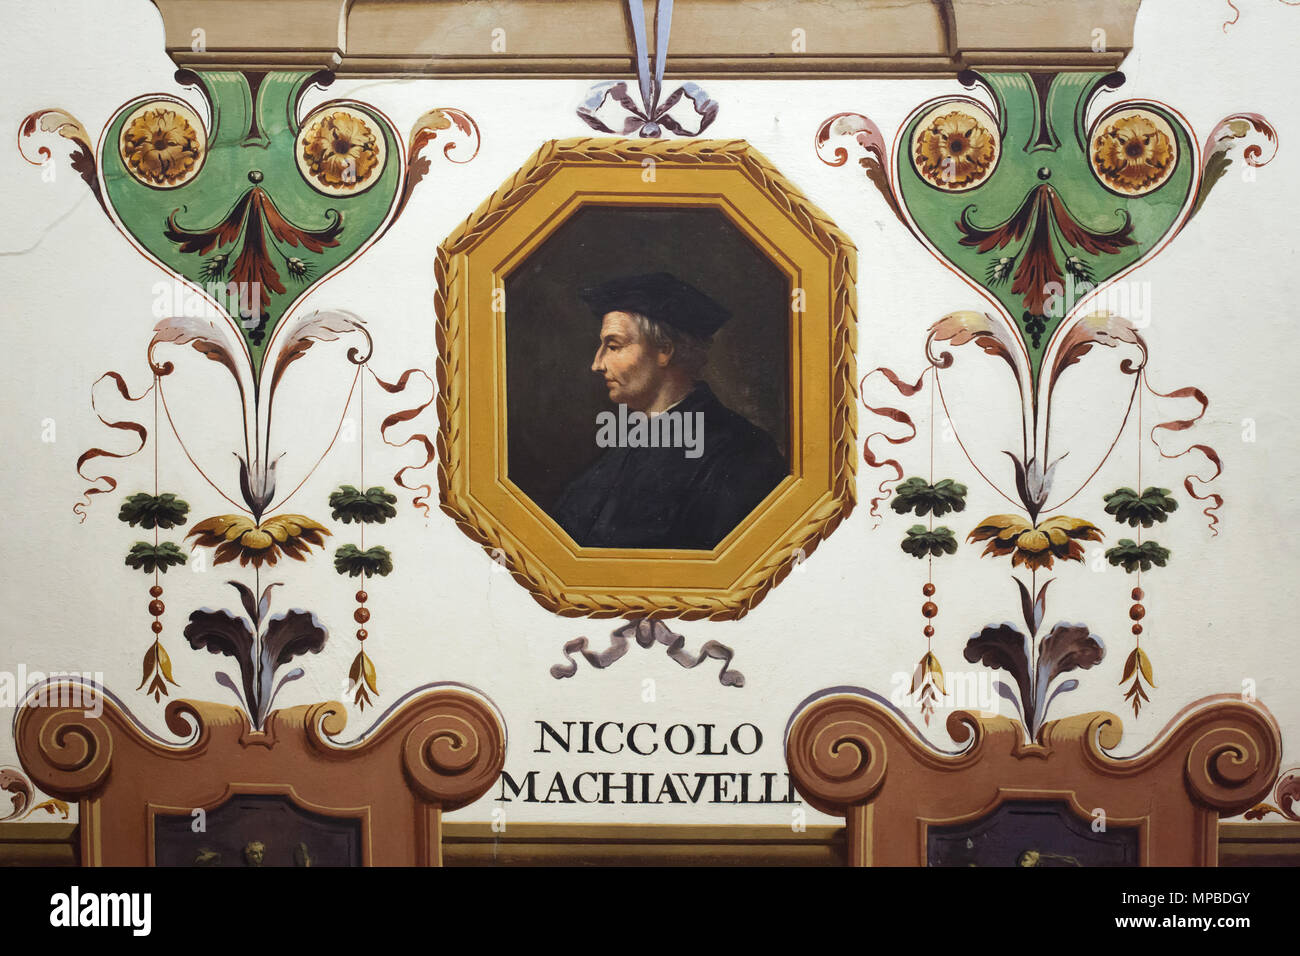 Homme politique et humaniste de la Renaissance italien Niccolò Machiavelli représenté dans la fresque au plafond dans le corridor de Vasari dans la galerie des Offices (Galleria degli Uffizi), à Florence, Toscane, Italie. Banque D'Images